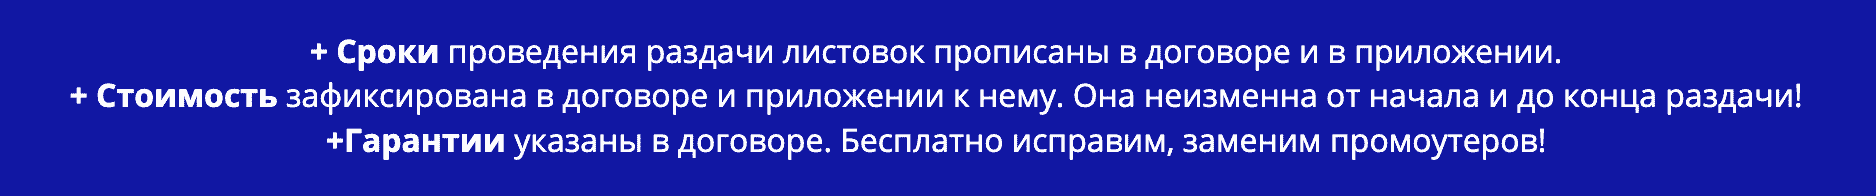 Условия договора раздачи листовок в г. Новокуйбышевск